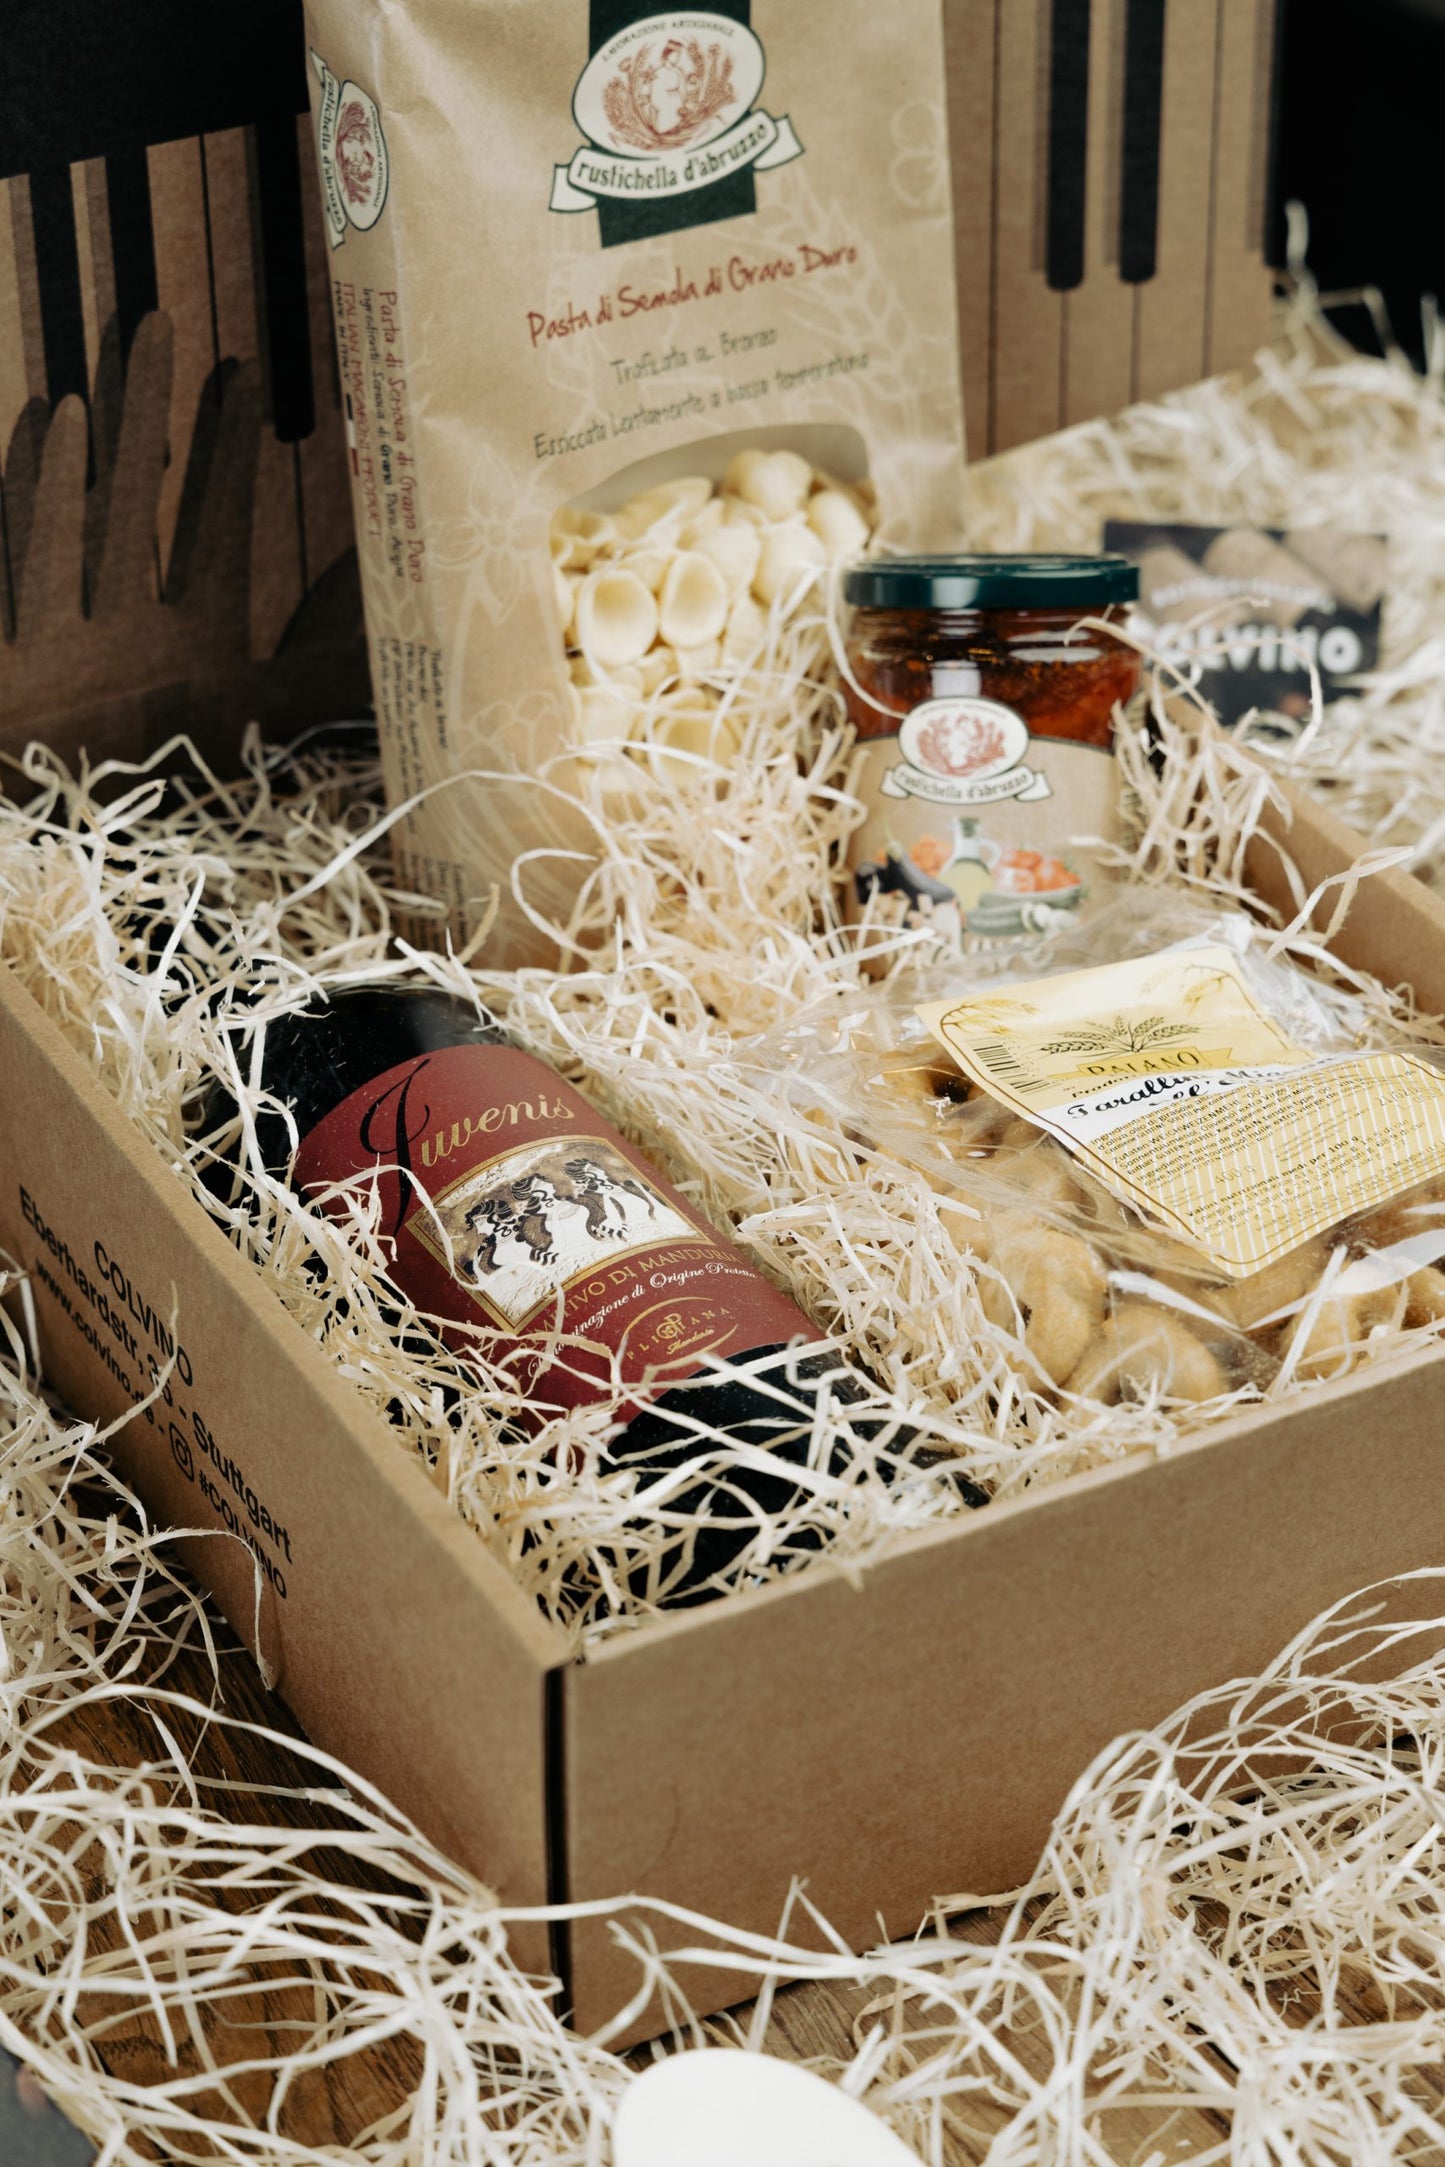 Geschenkbox: Geschenkkorb “Adoro la Puglia”